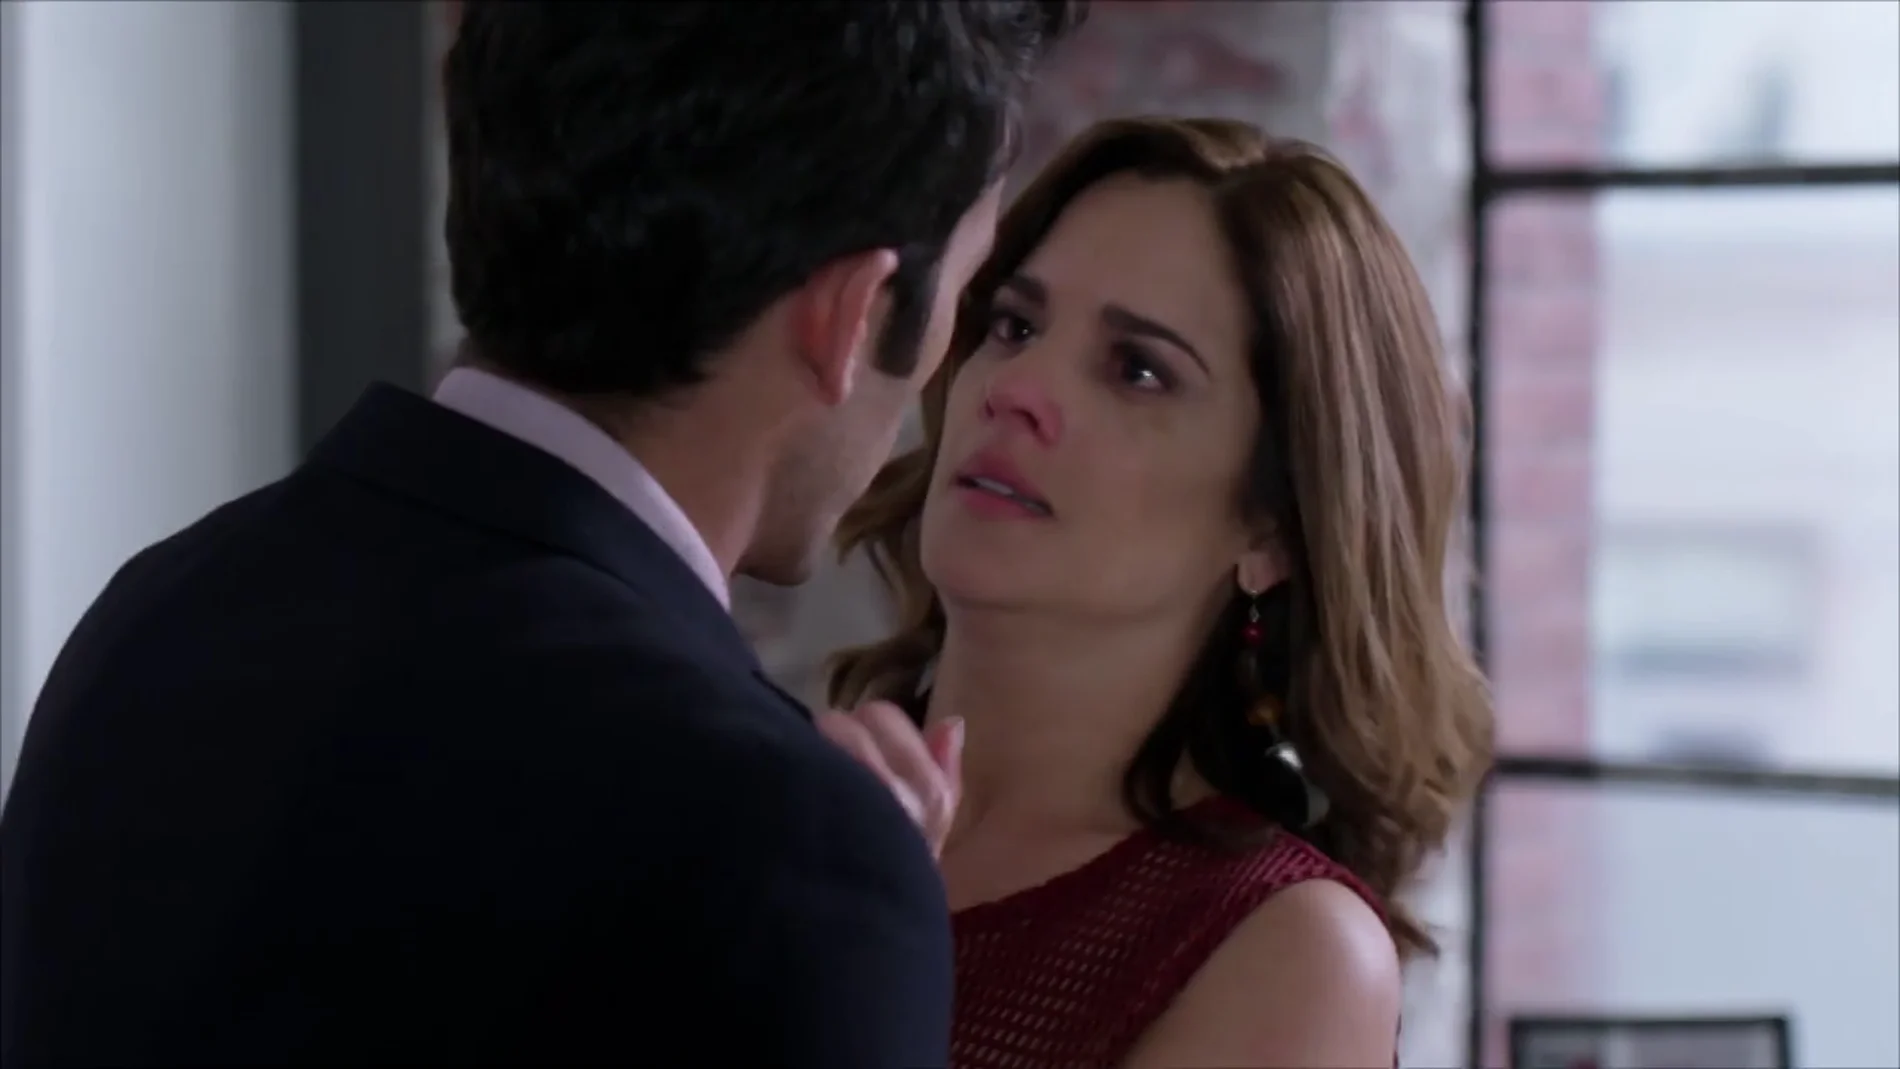 Ricardo intenta besar a Marcela: "Lo nuestro es real"